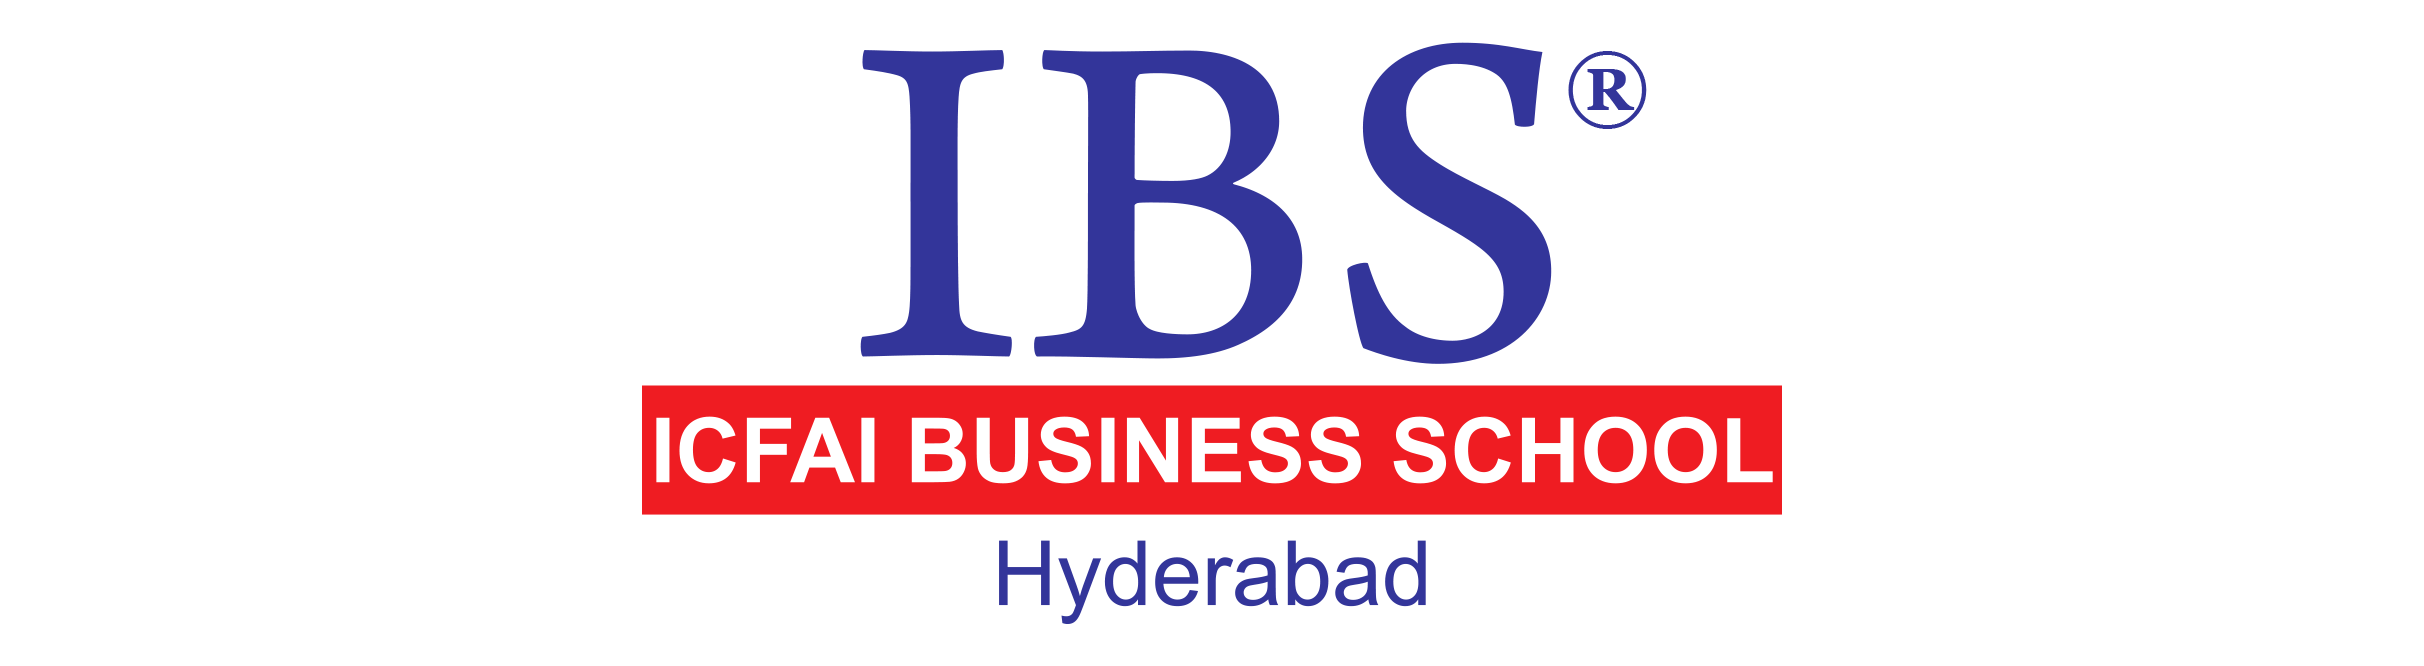 IBS Hyderabad